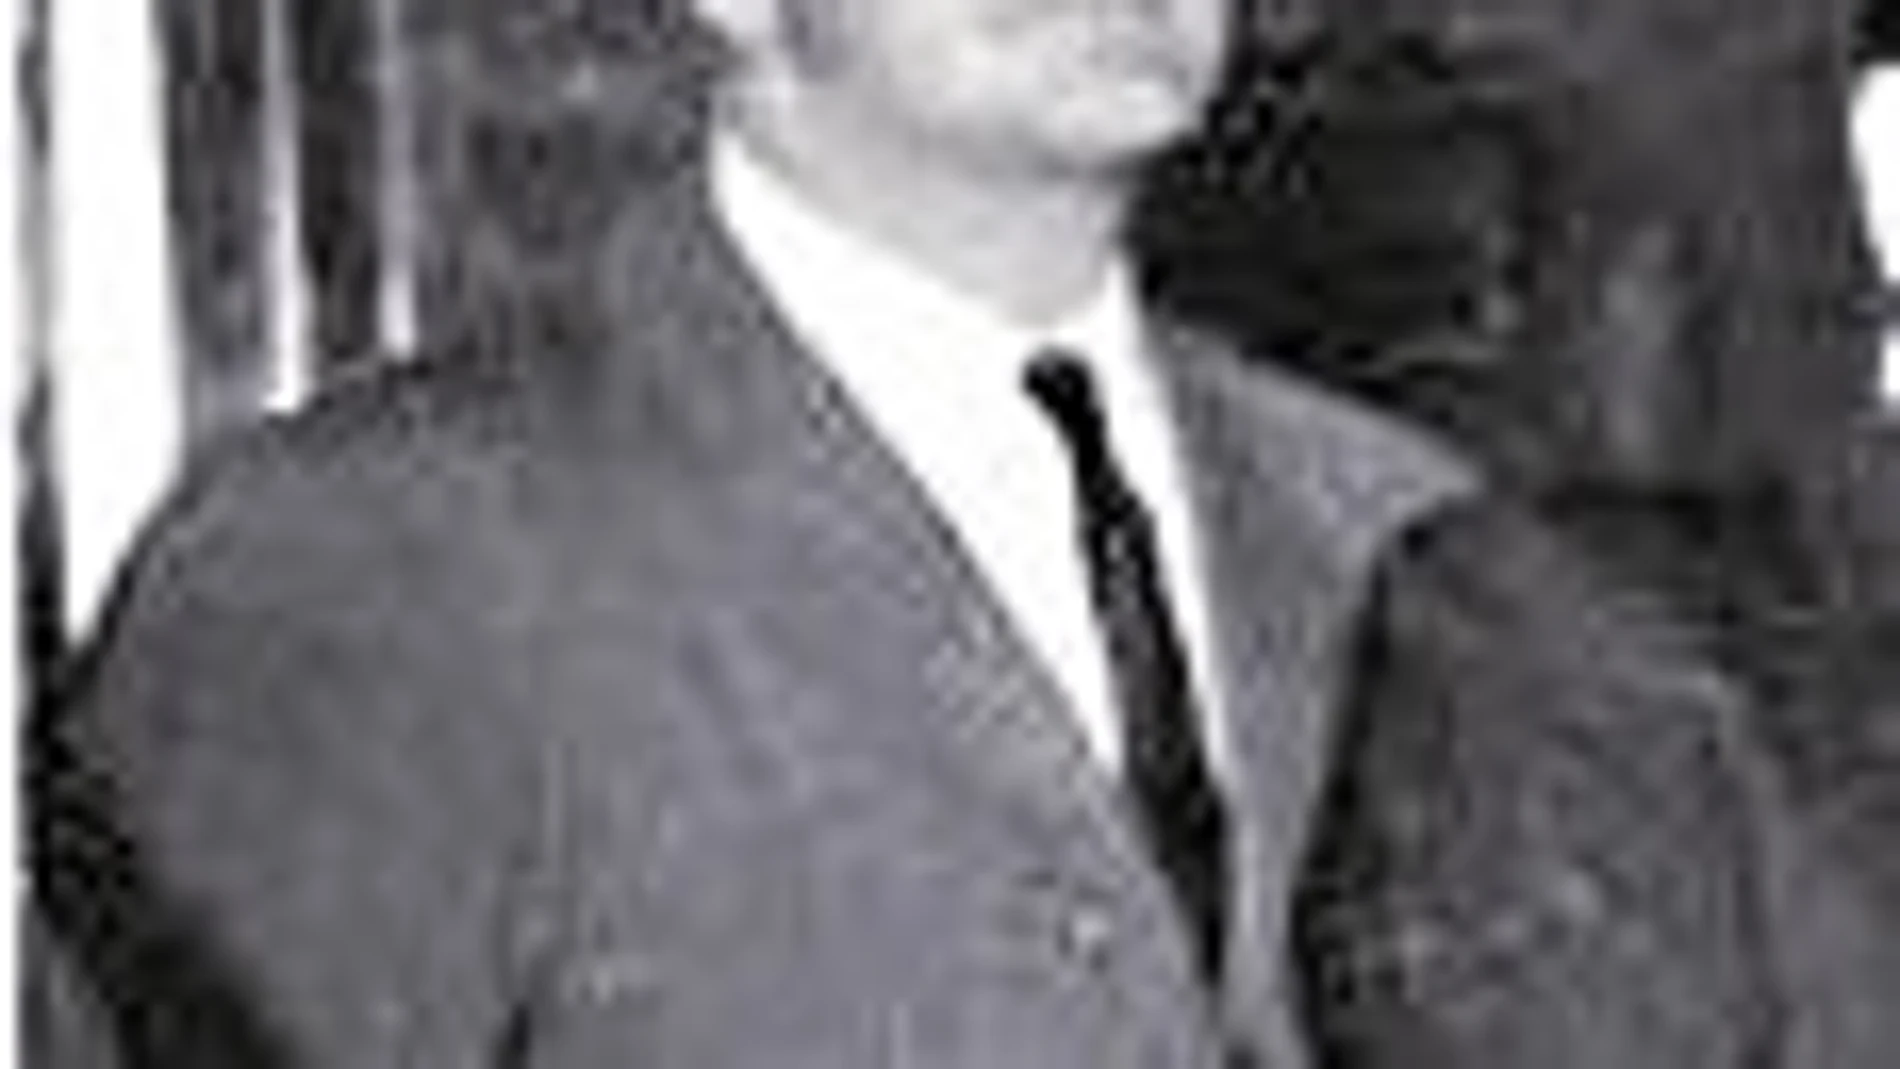 En 1985 Urrusolo participó en el asesinato del director general del Banco Central, Ricardo Tejero Magro (en la imagen). La banda terrorista ETA esperó a Tejero en su domicilio, donde le asesinó